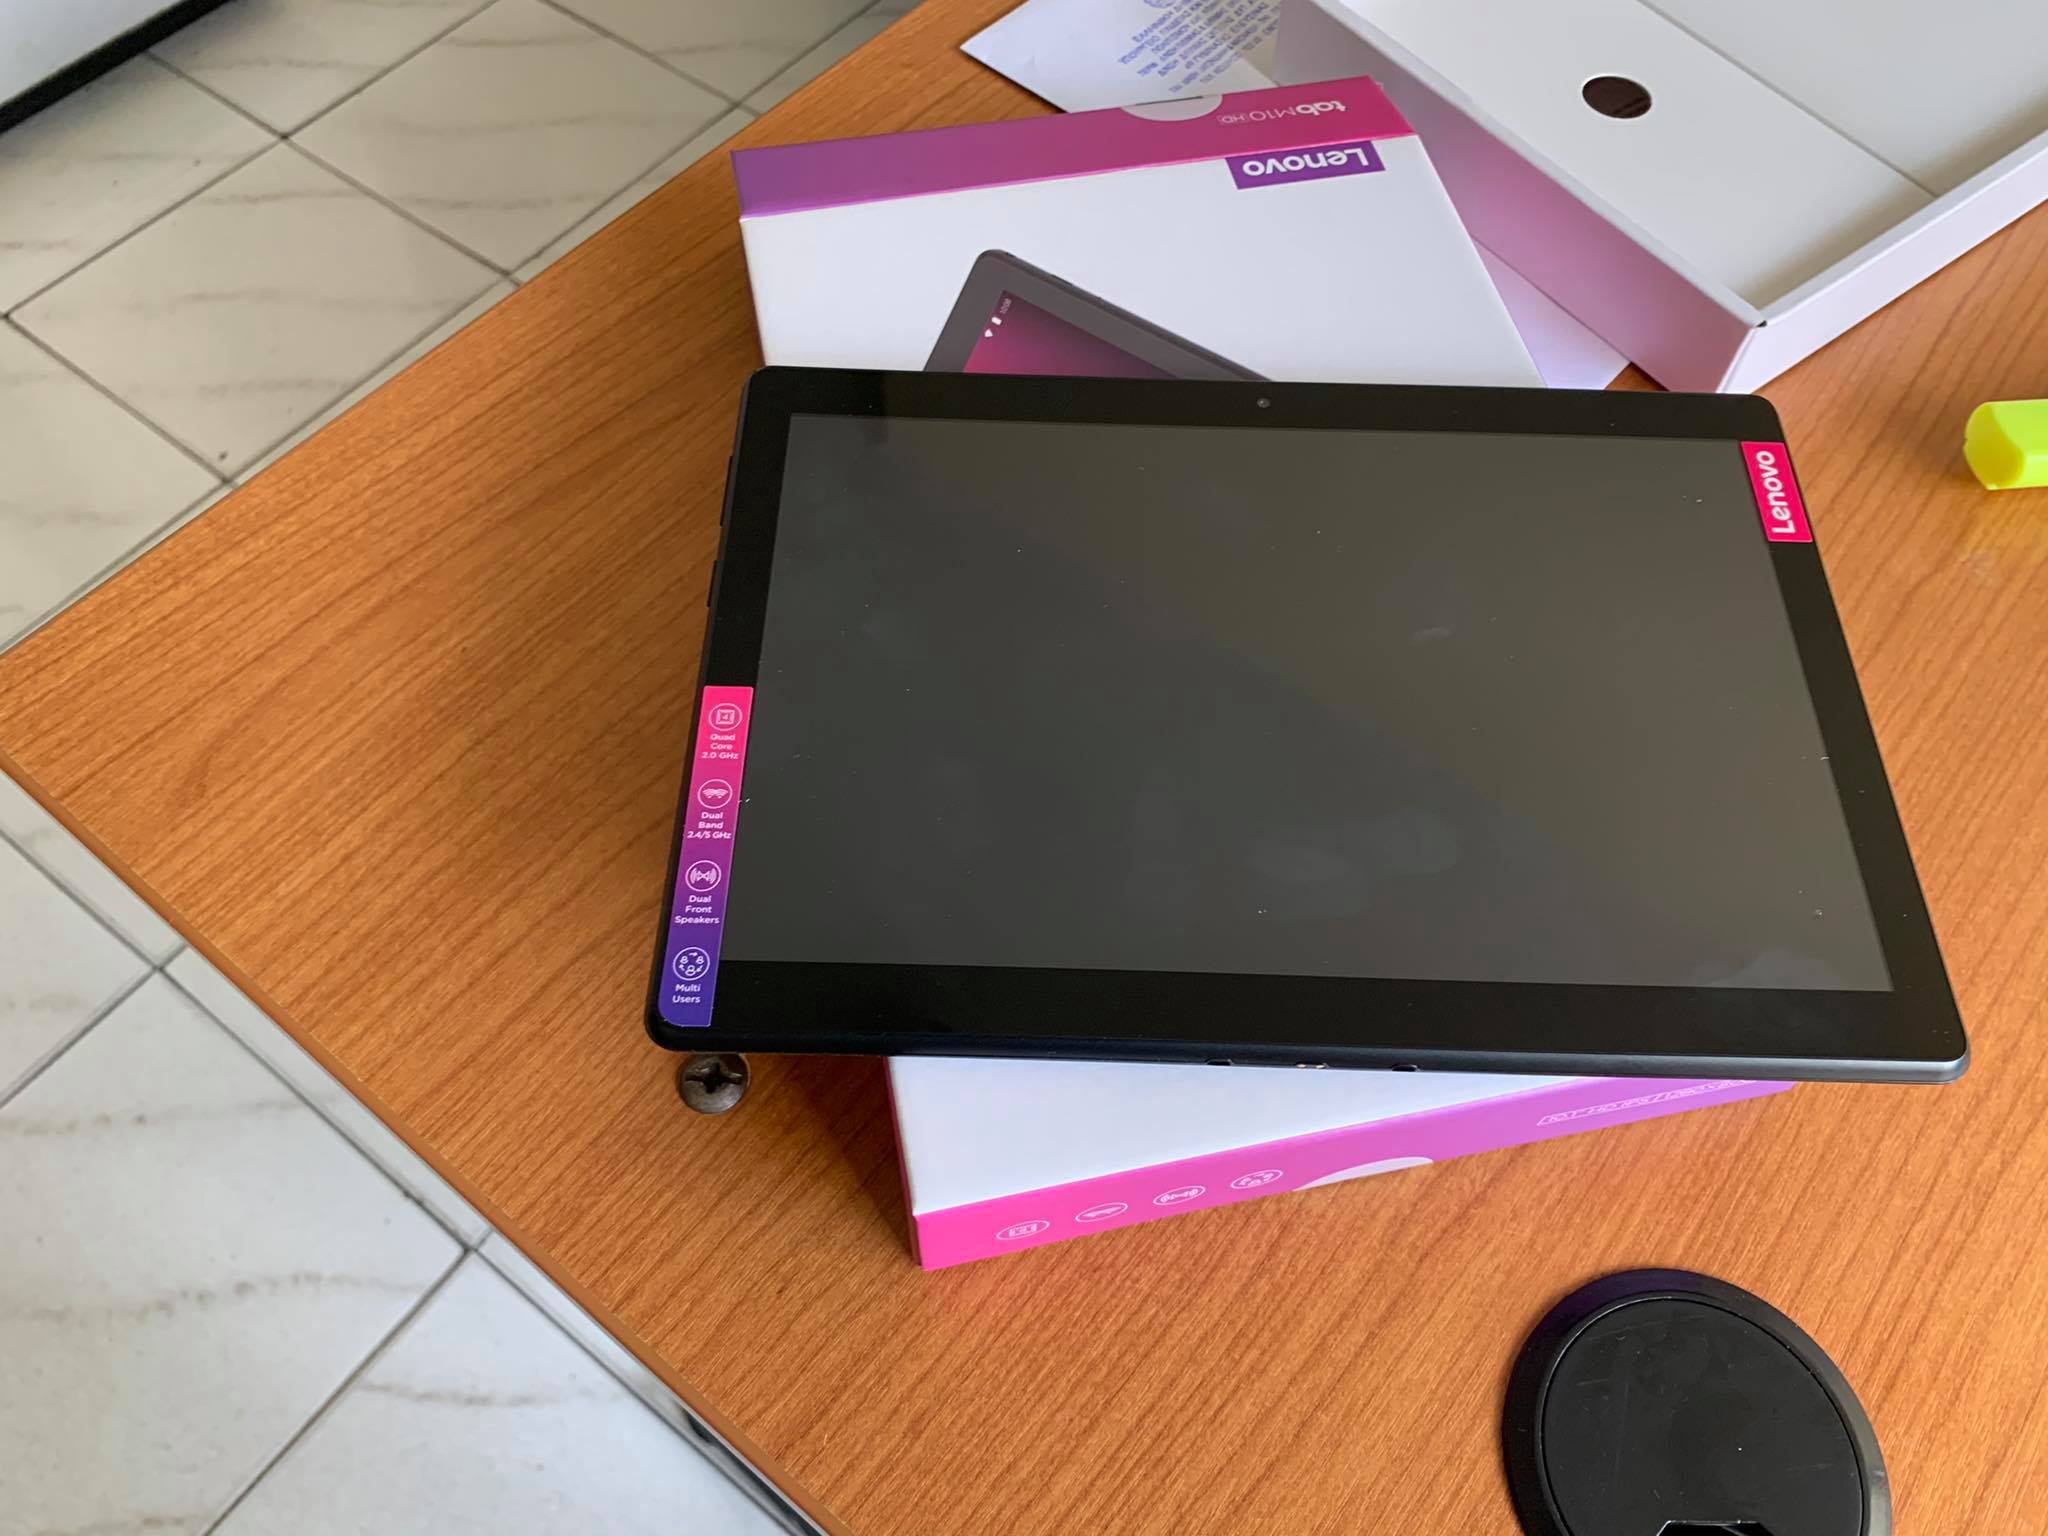 Δωρεάν tablet σε μαθητές από τον Δήμο Ελευσίνας για τις ανάγκες της τηλεκπαίδευσης